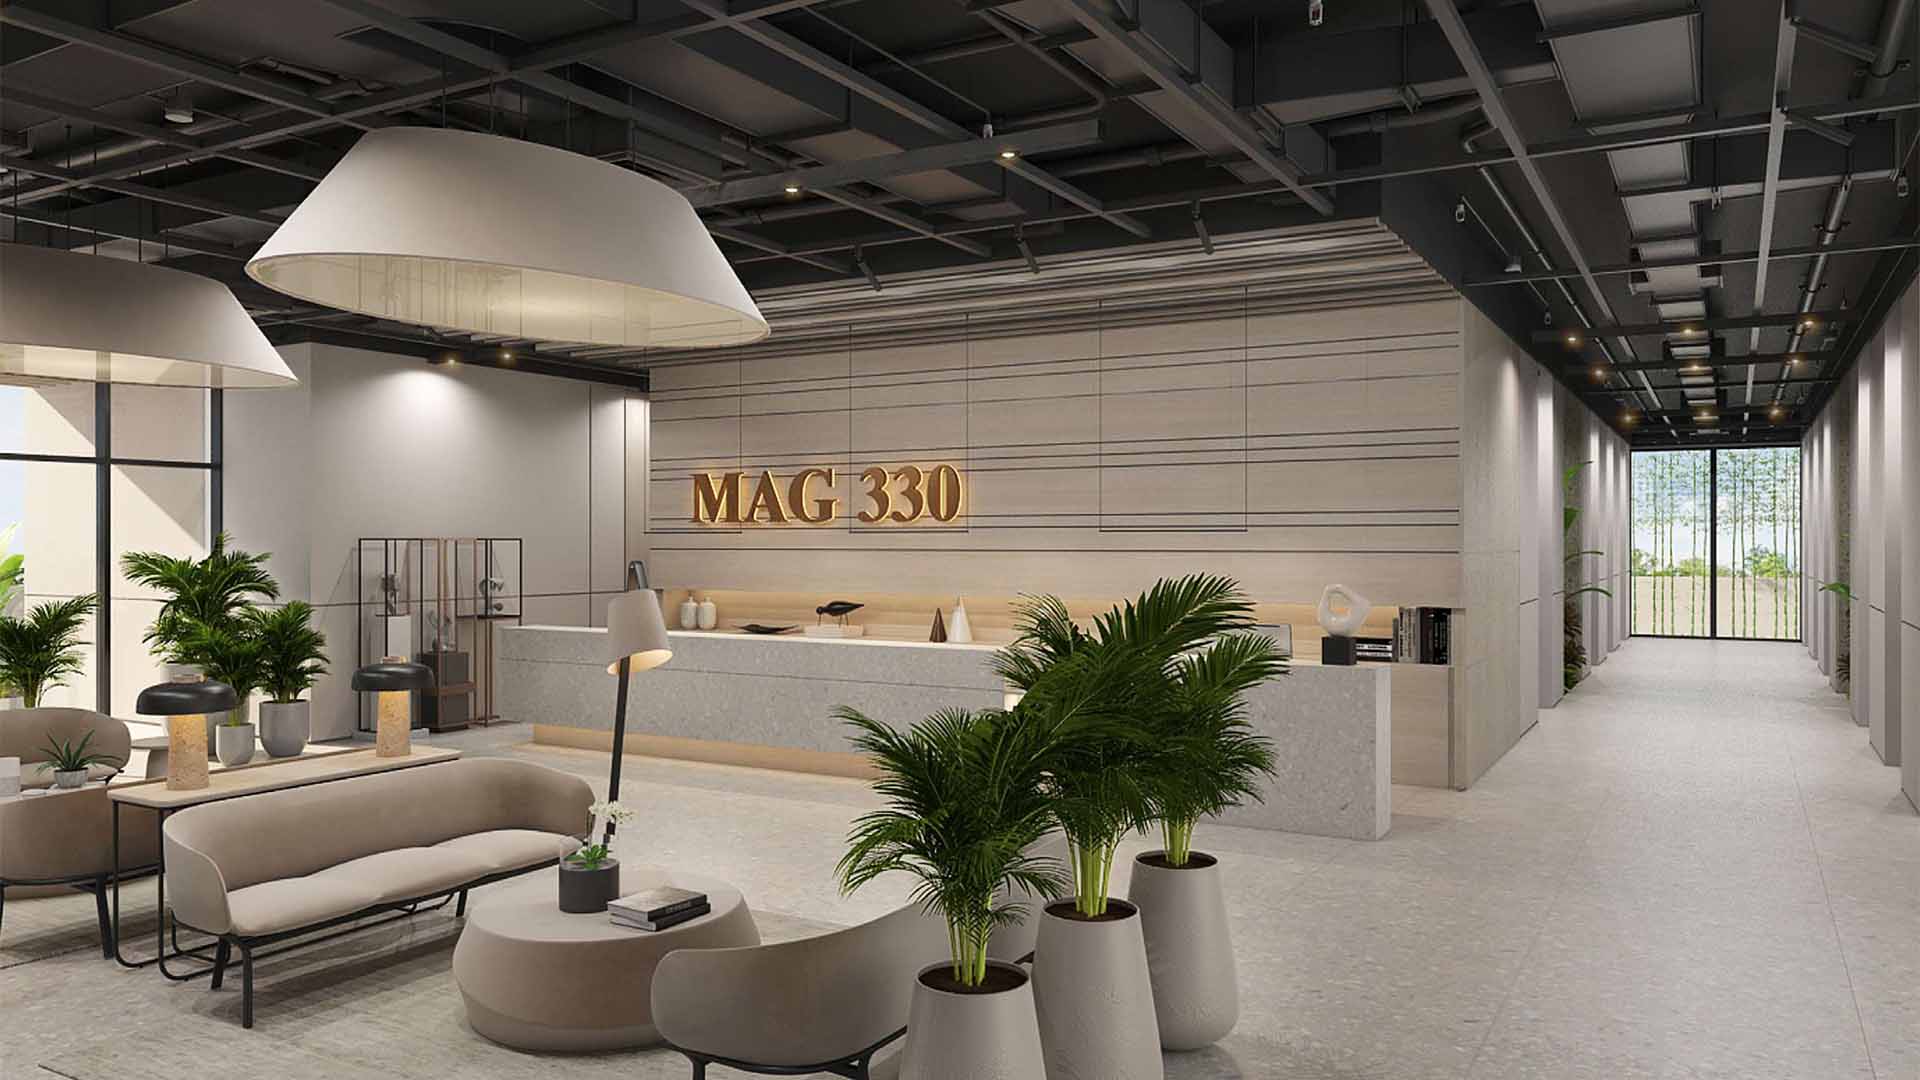 MAG 330 at Dubailand